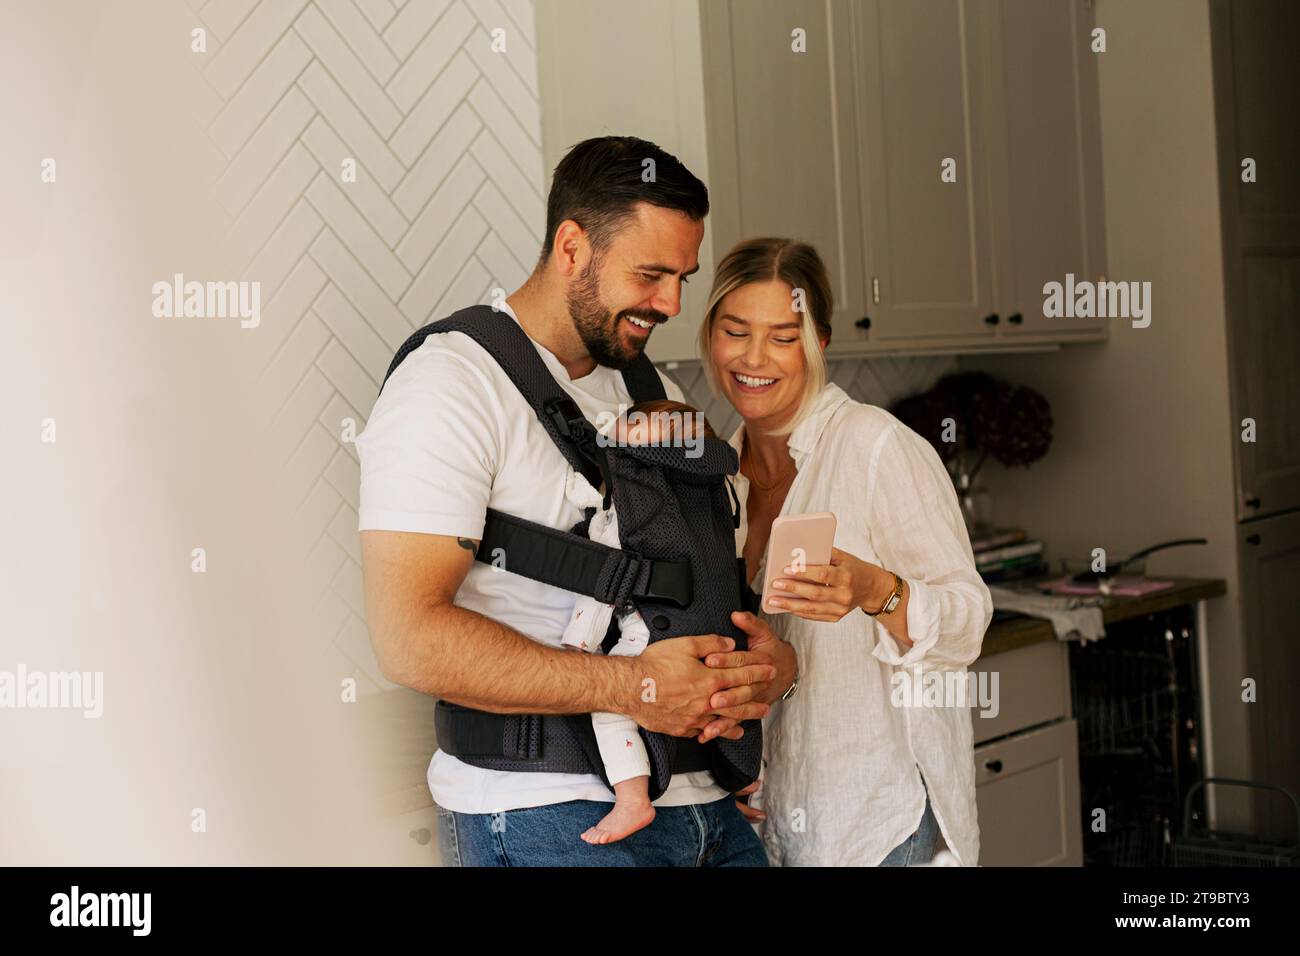 Lächelnde Frau, die ihr Smartphone mit einem Mann teilt, der zu Hause den Sohn trägt Stockfoto